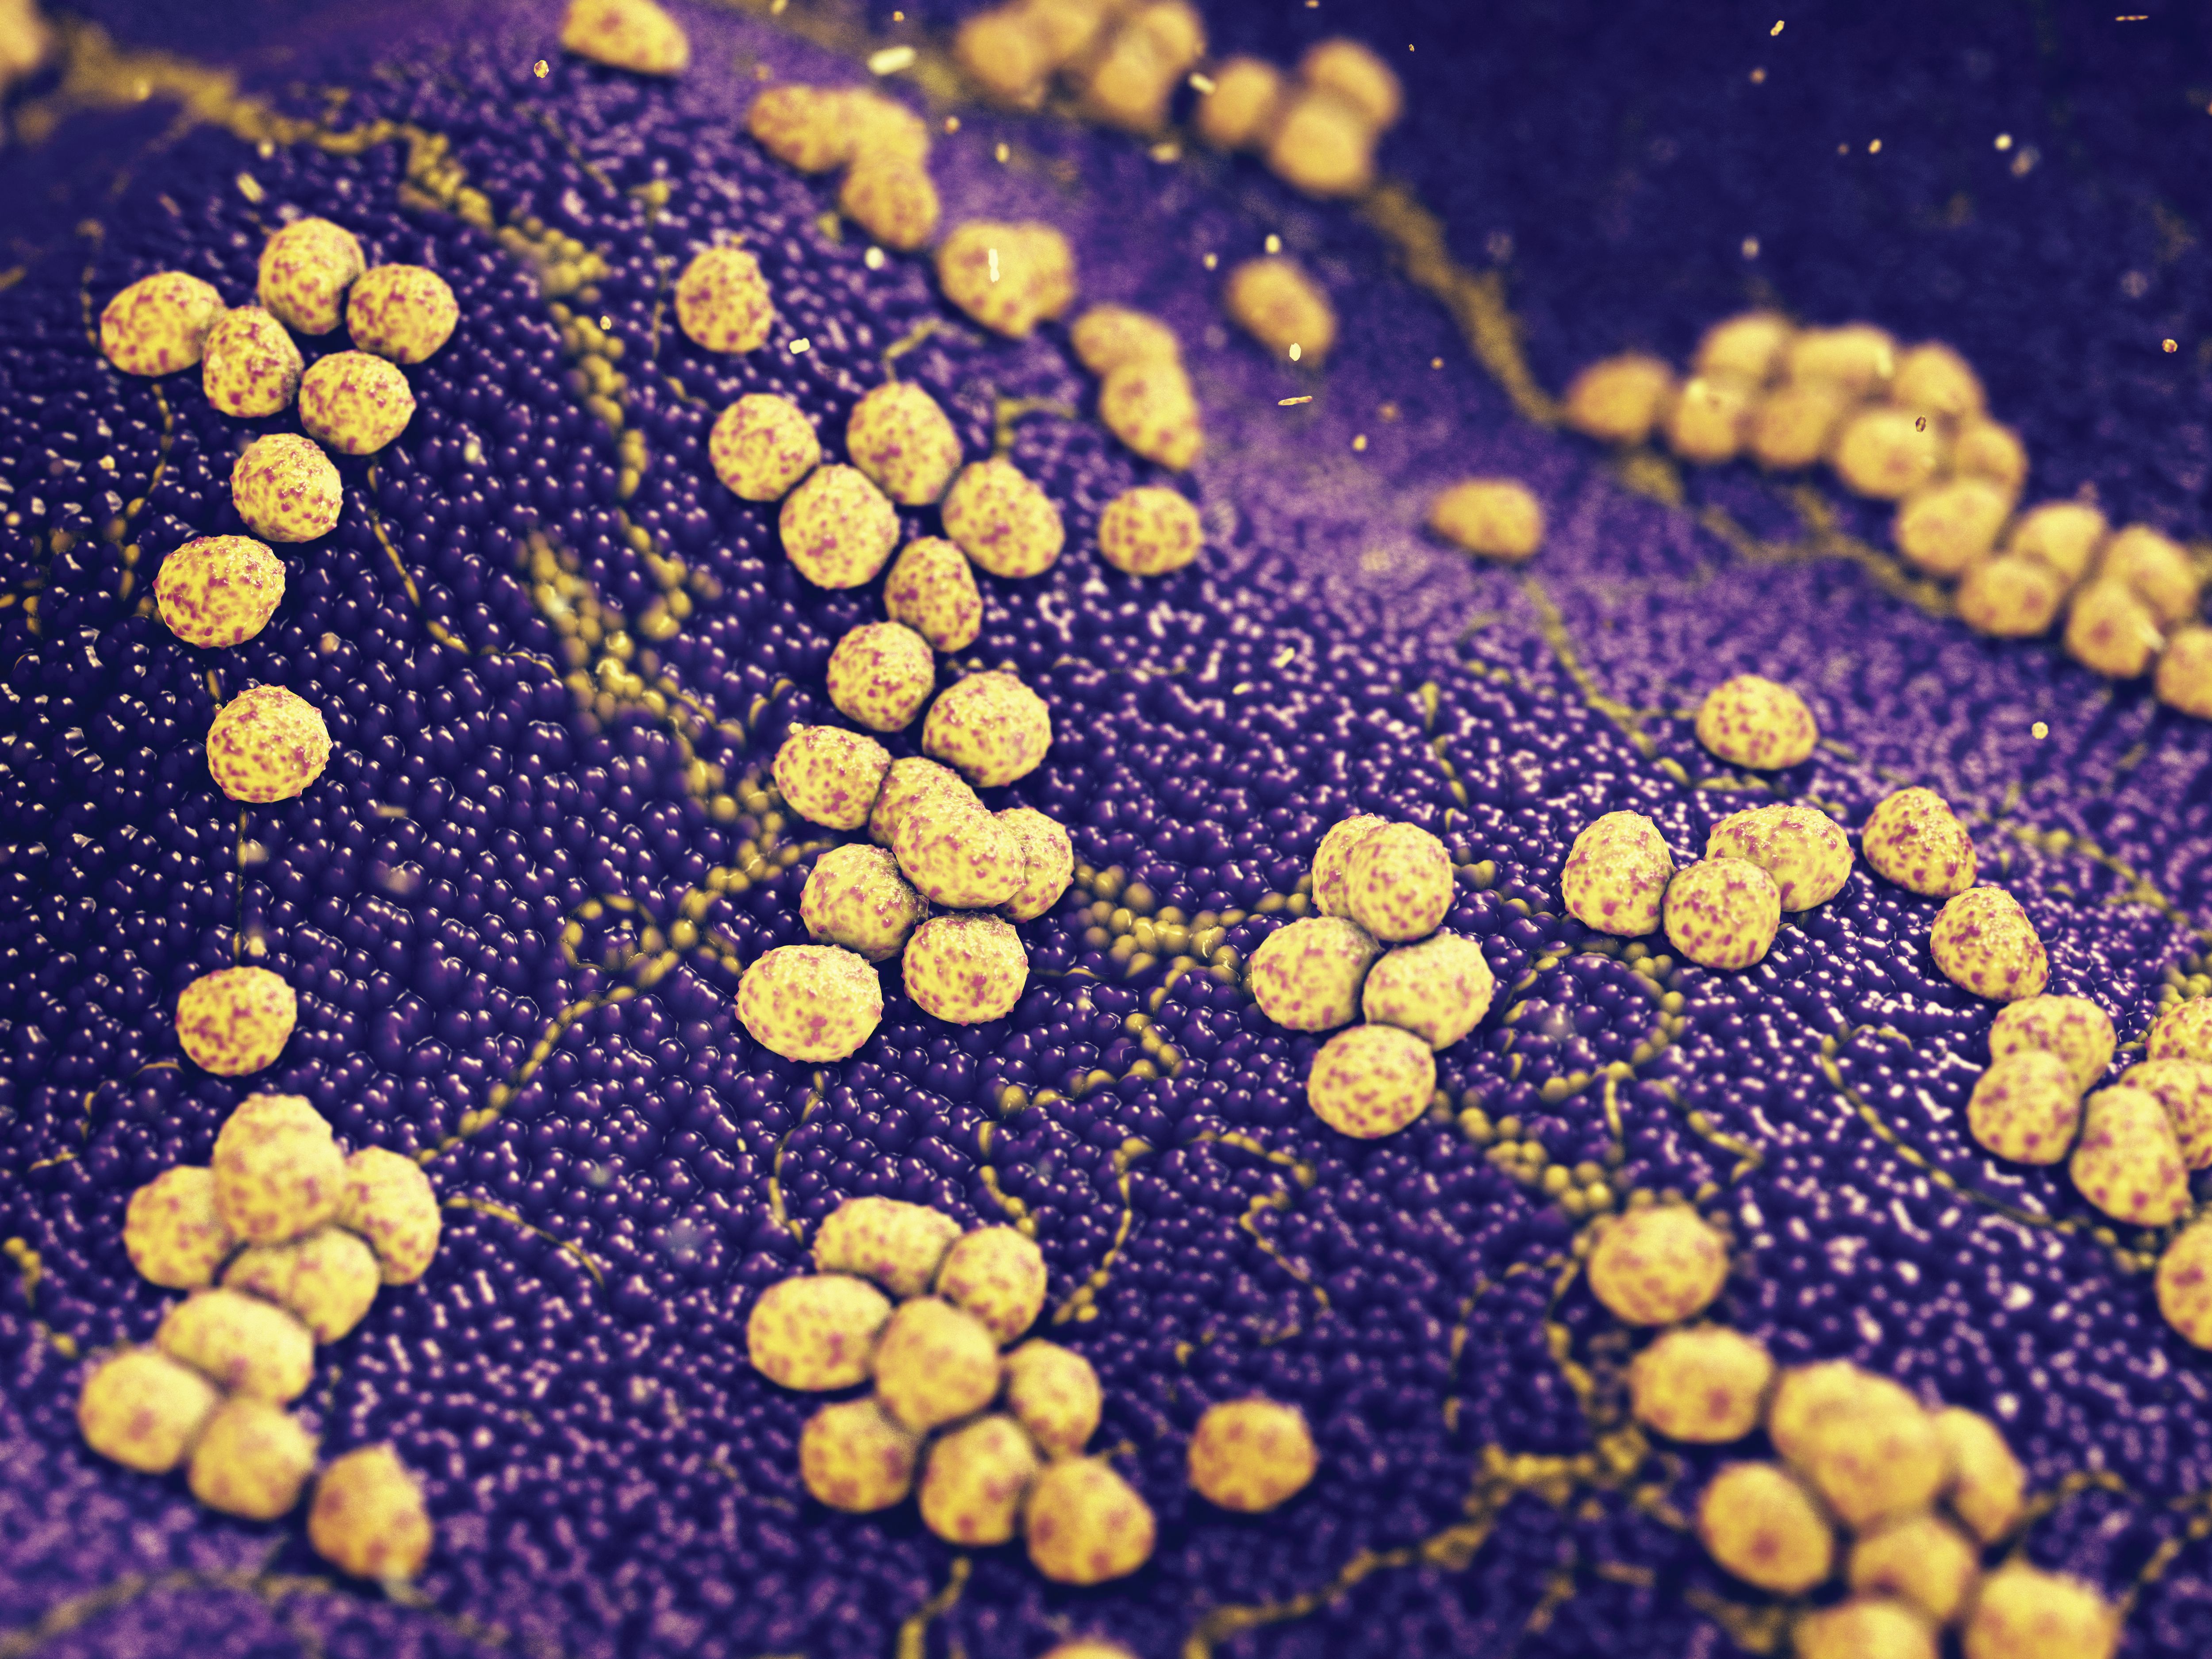 1 staphylococcus aureus. Бактерия золотистый стафилококк. Стафилококк ауреус золотистый. Стафилококк золотистый Staphylococcus aureus.